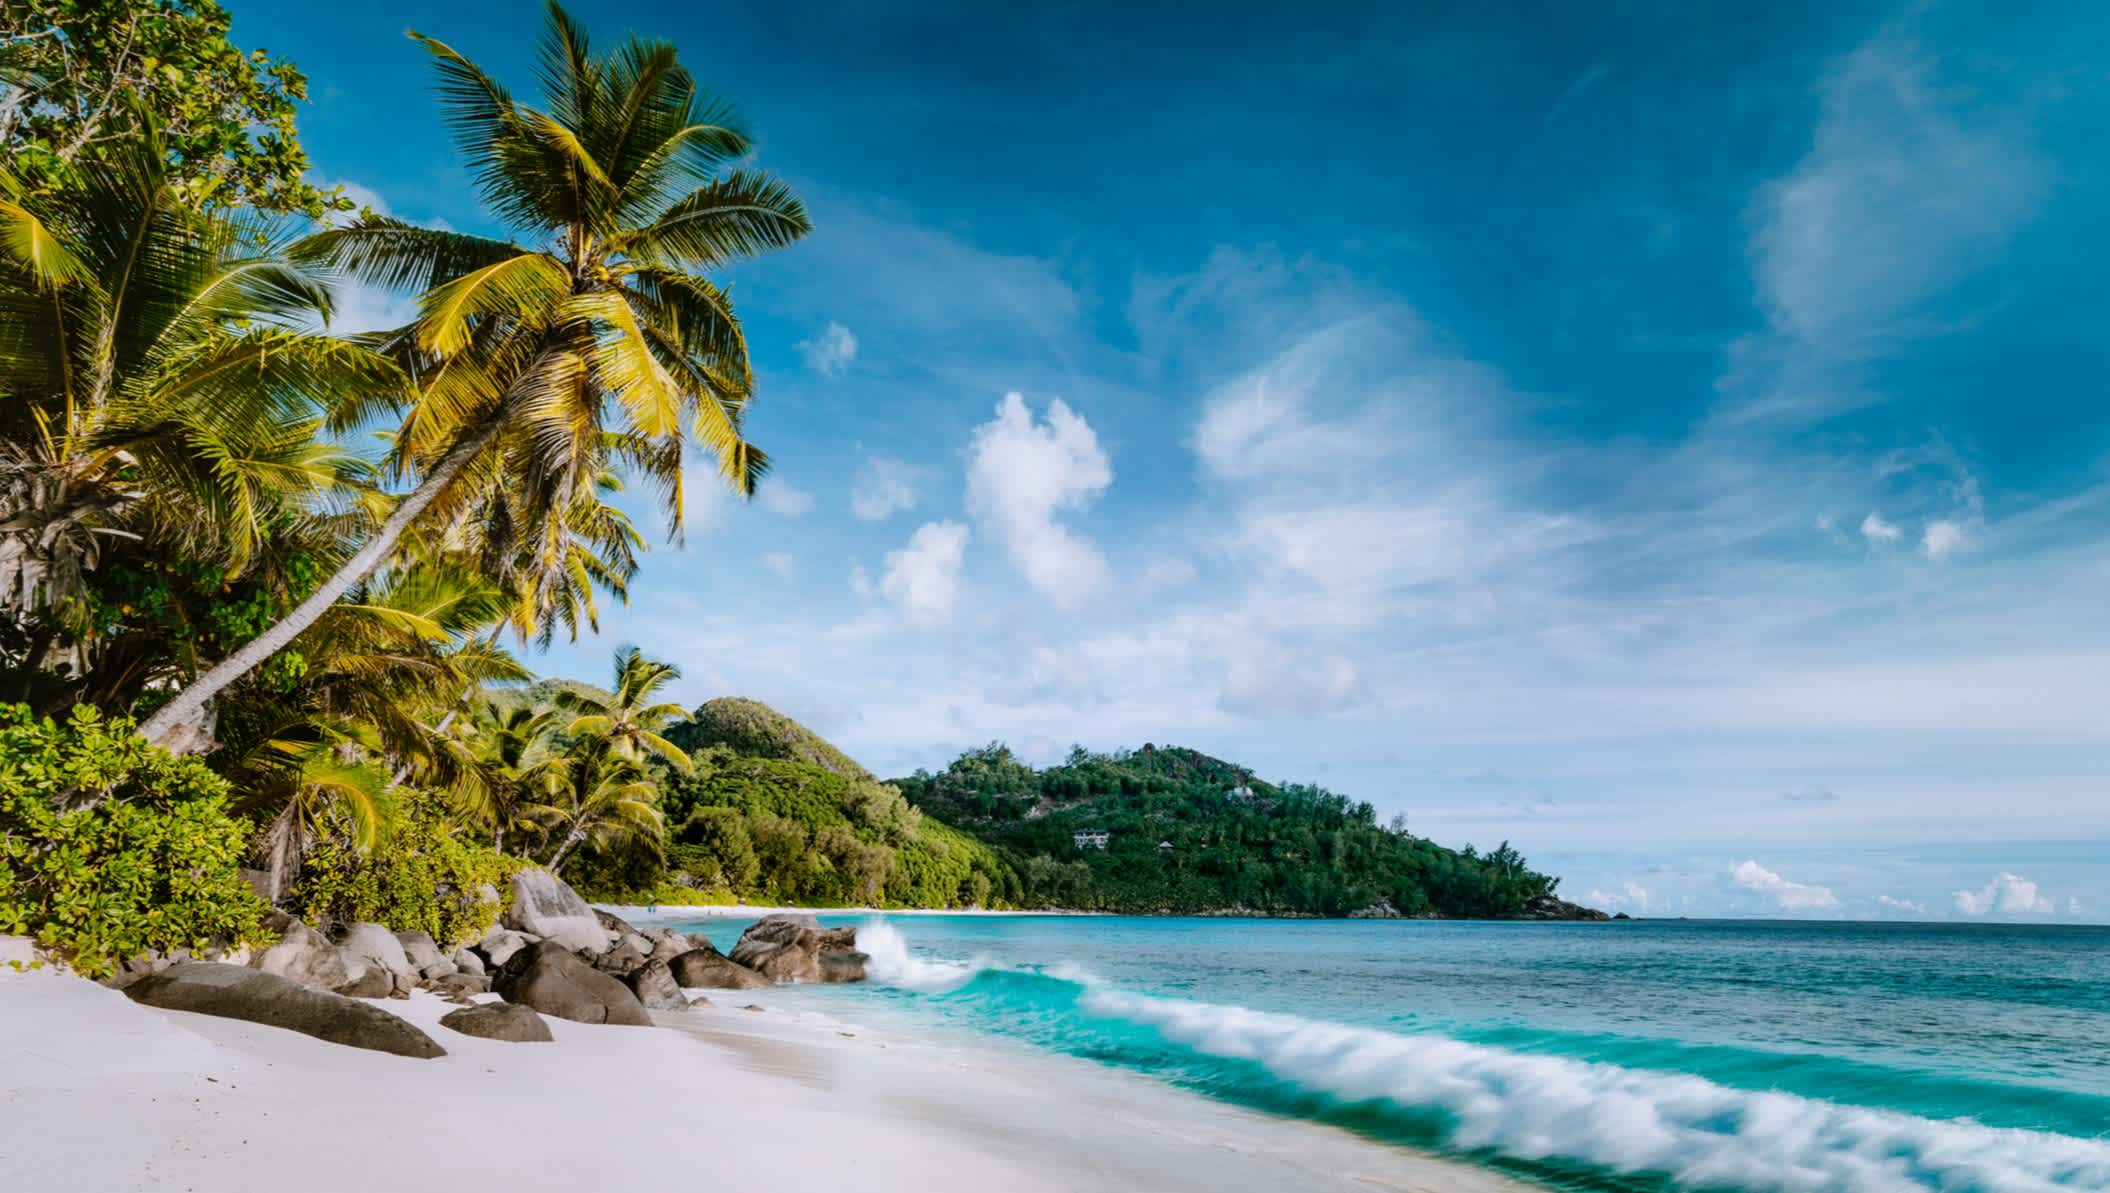 Plage d'Anse Intendance avec cocotiers, sur l'île de Mahé aux Seychelles.